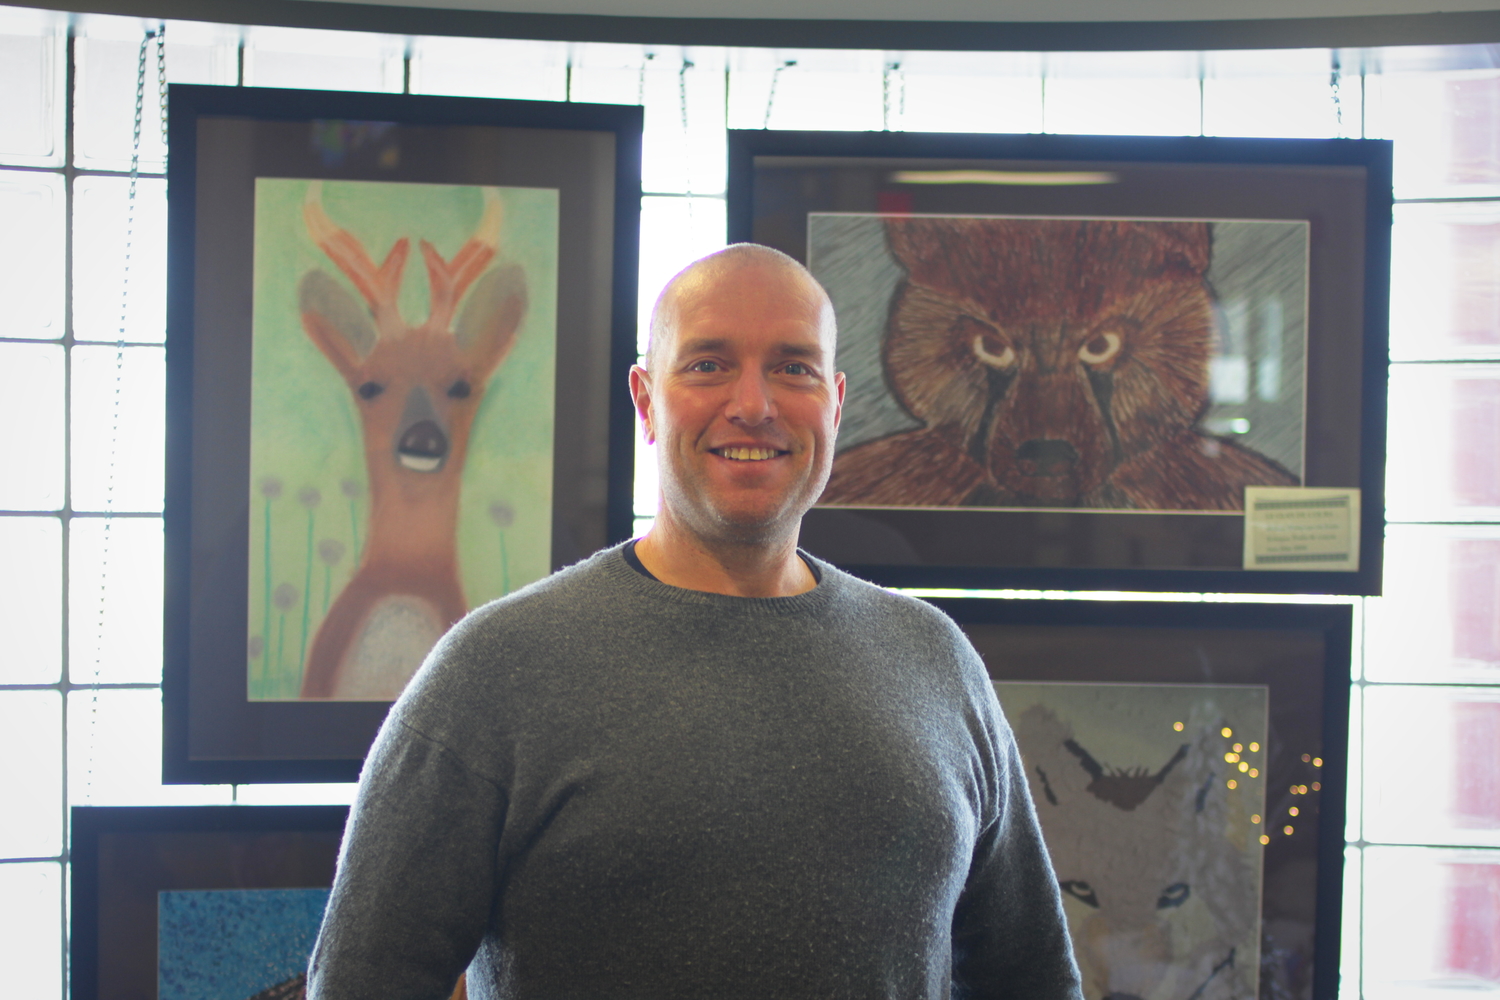 Le chef de famille Rémy VINCENT. Il est devant quatre peintures qui représentent les animaux des 4 clans wendats : le chevreuil, le loup, l’ours et la tortue.